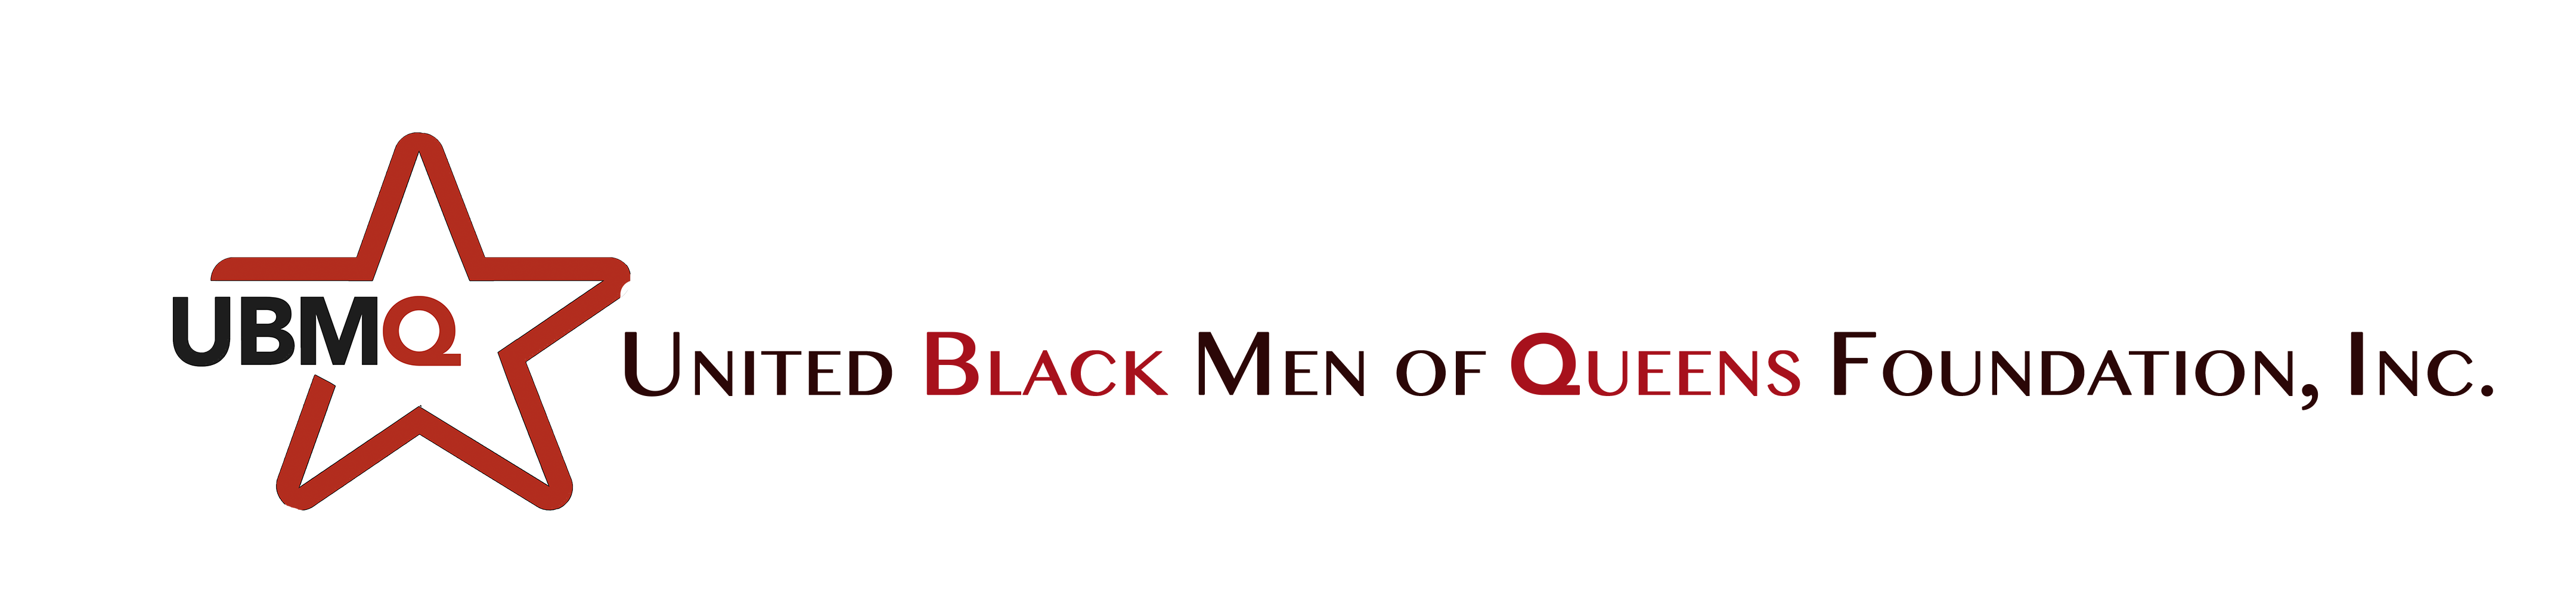 United Black Men of Queens